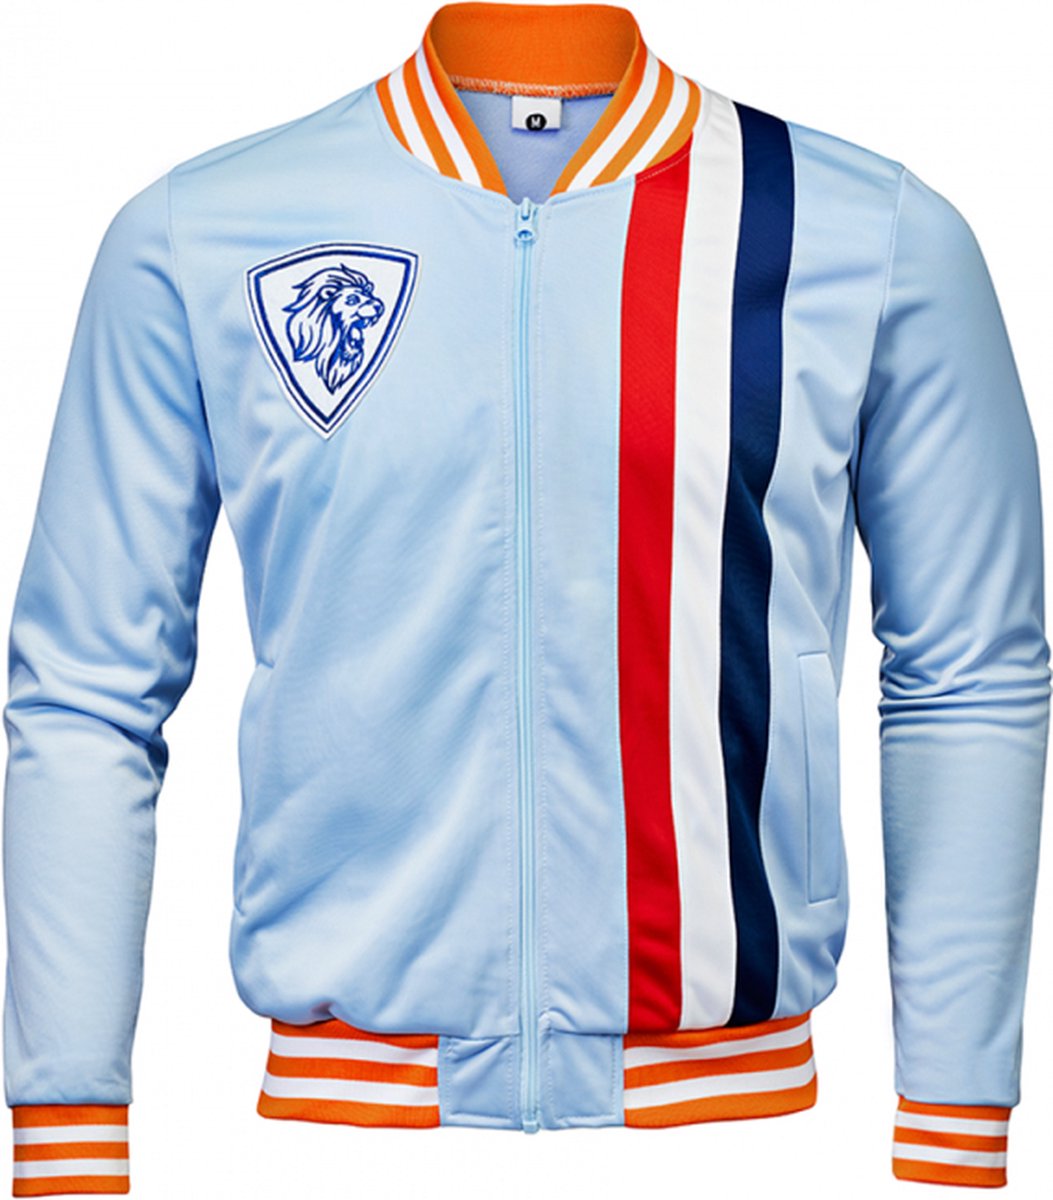 Trainings jas - Koningsdag kleding - Jack - Unisex Dames en Heren - Rood Wit Blauw Oranje - Maat M